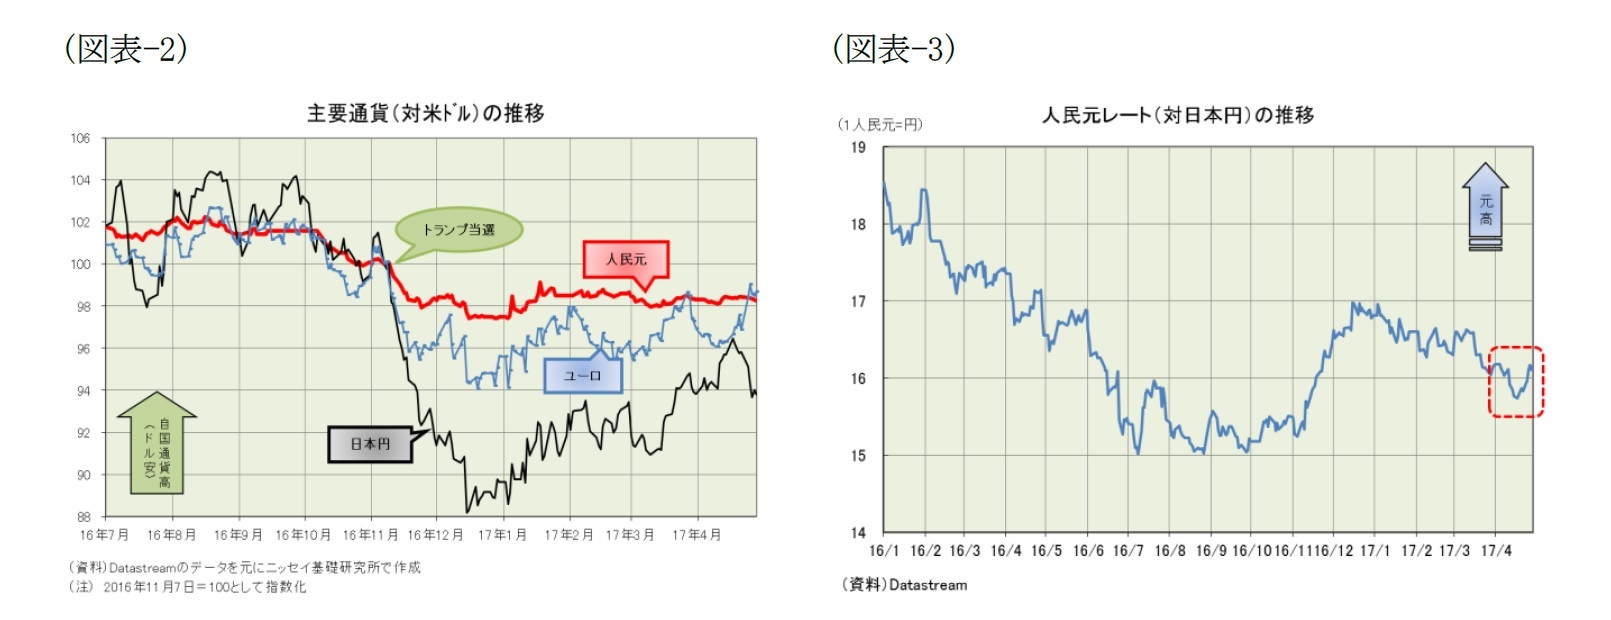 （図表-2）主要通貨(対米ドル)の推移/（図表-3）人民元レート(対日本円)の推移